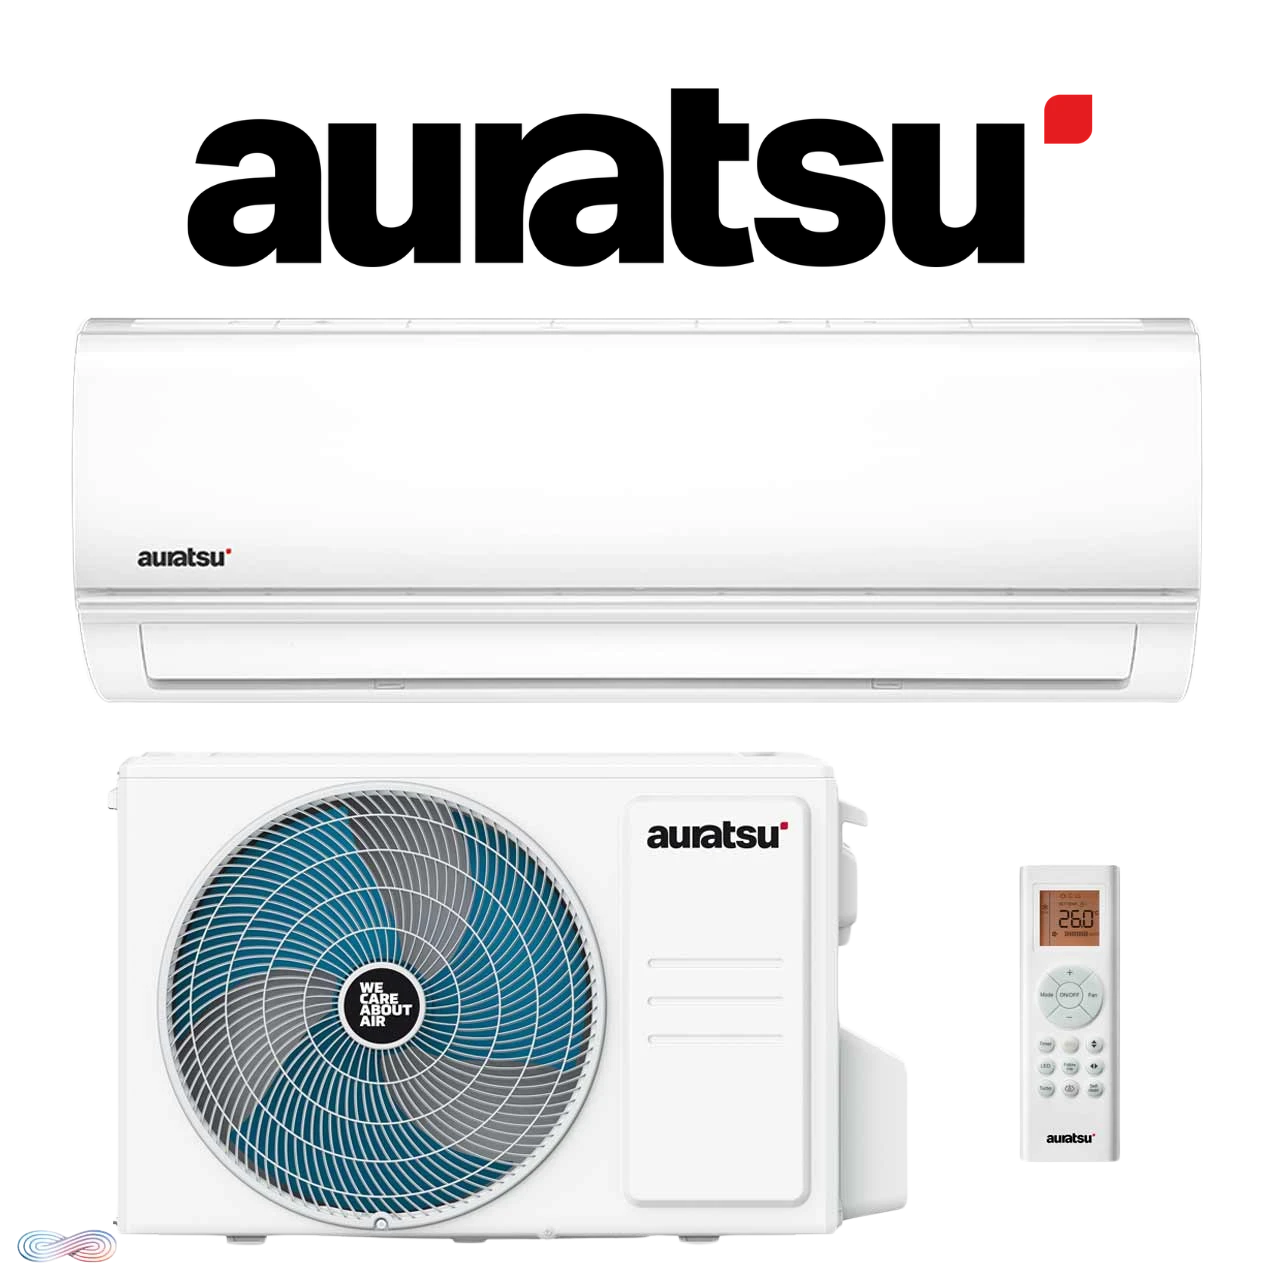 Auratsu air conditioner/heat pump 2.6kW - 7.0kW